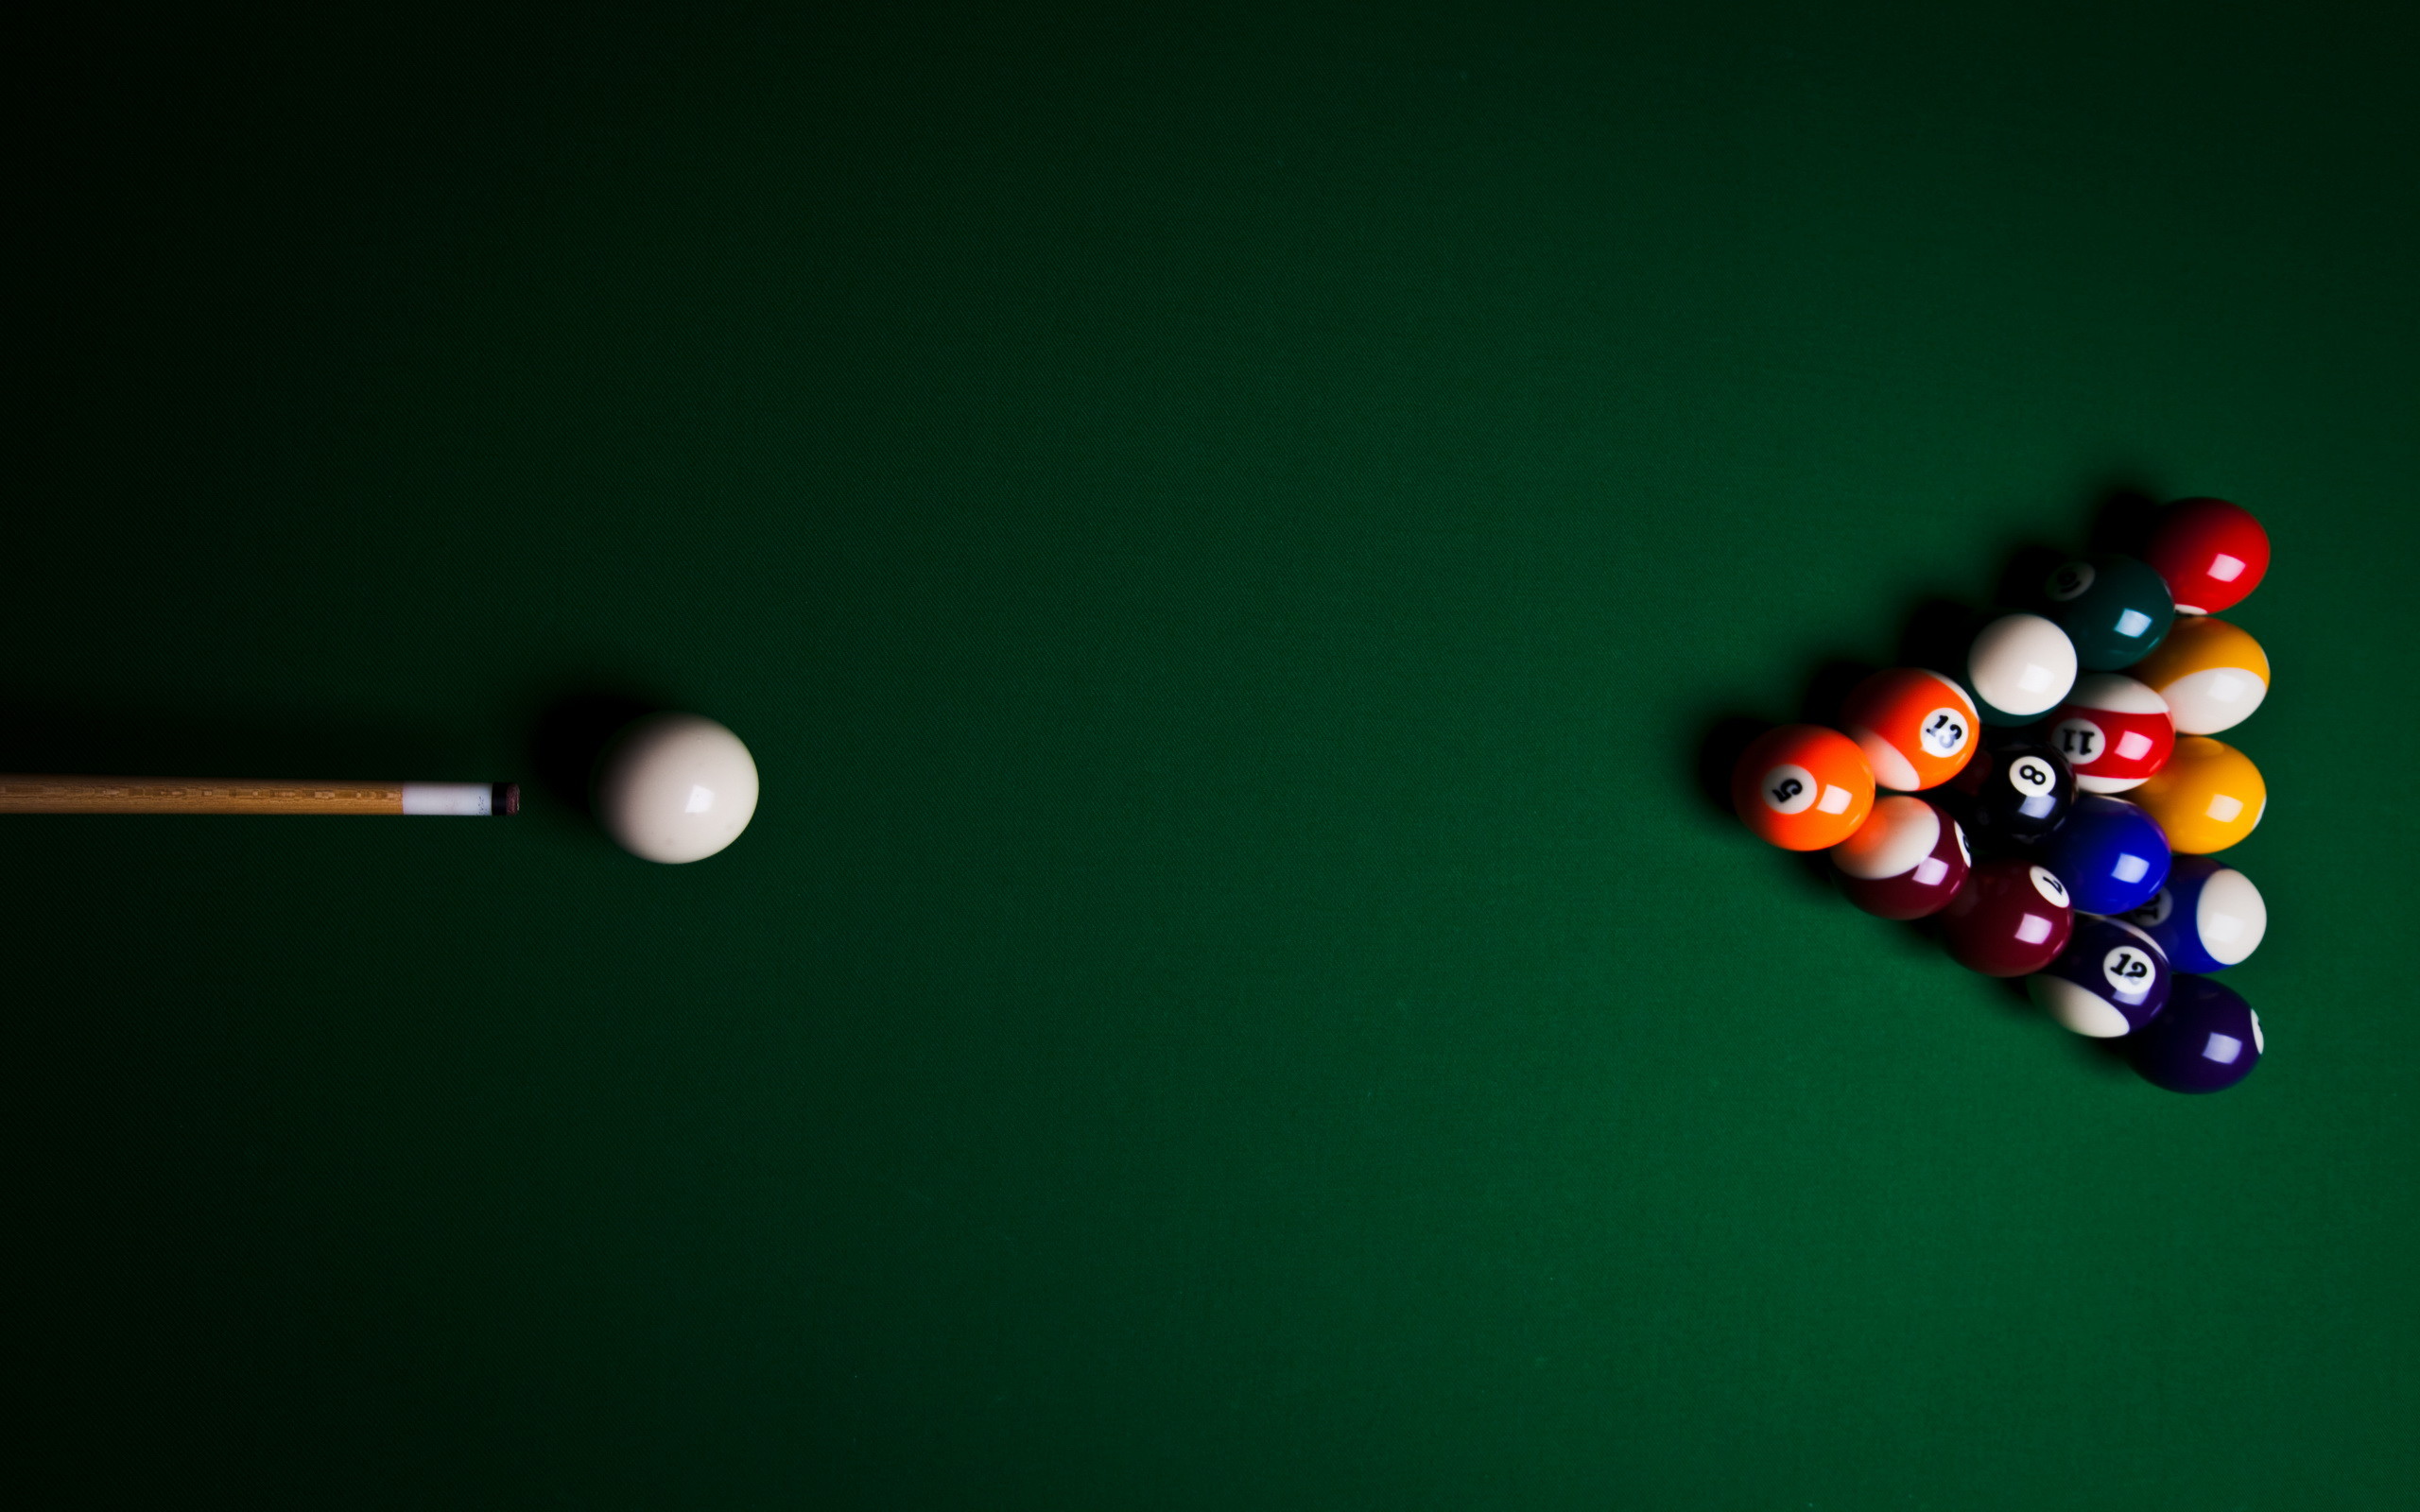 2560x1600 pool table balls photography. pool table balls photography